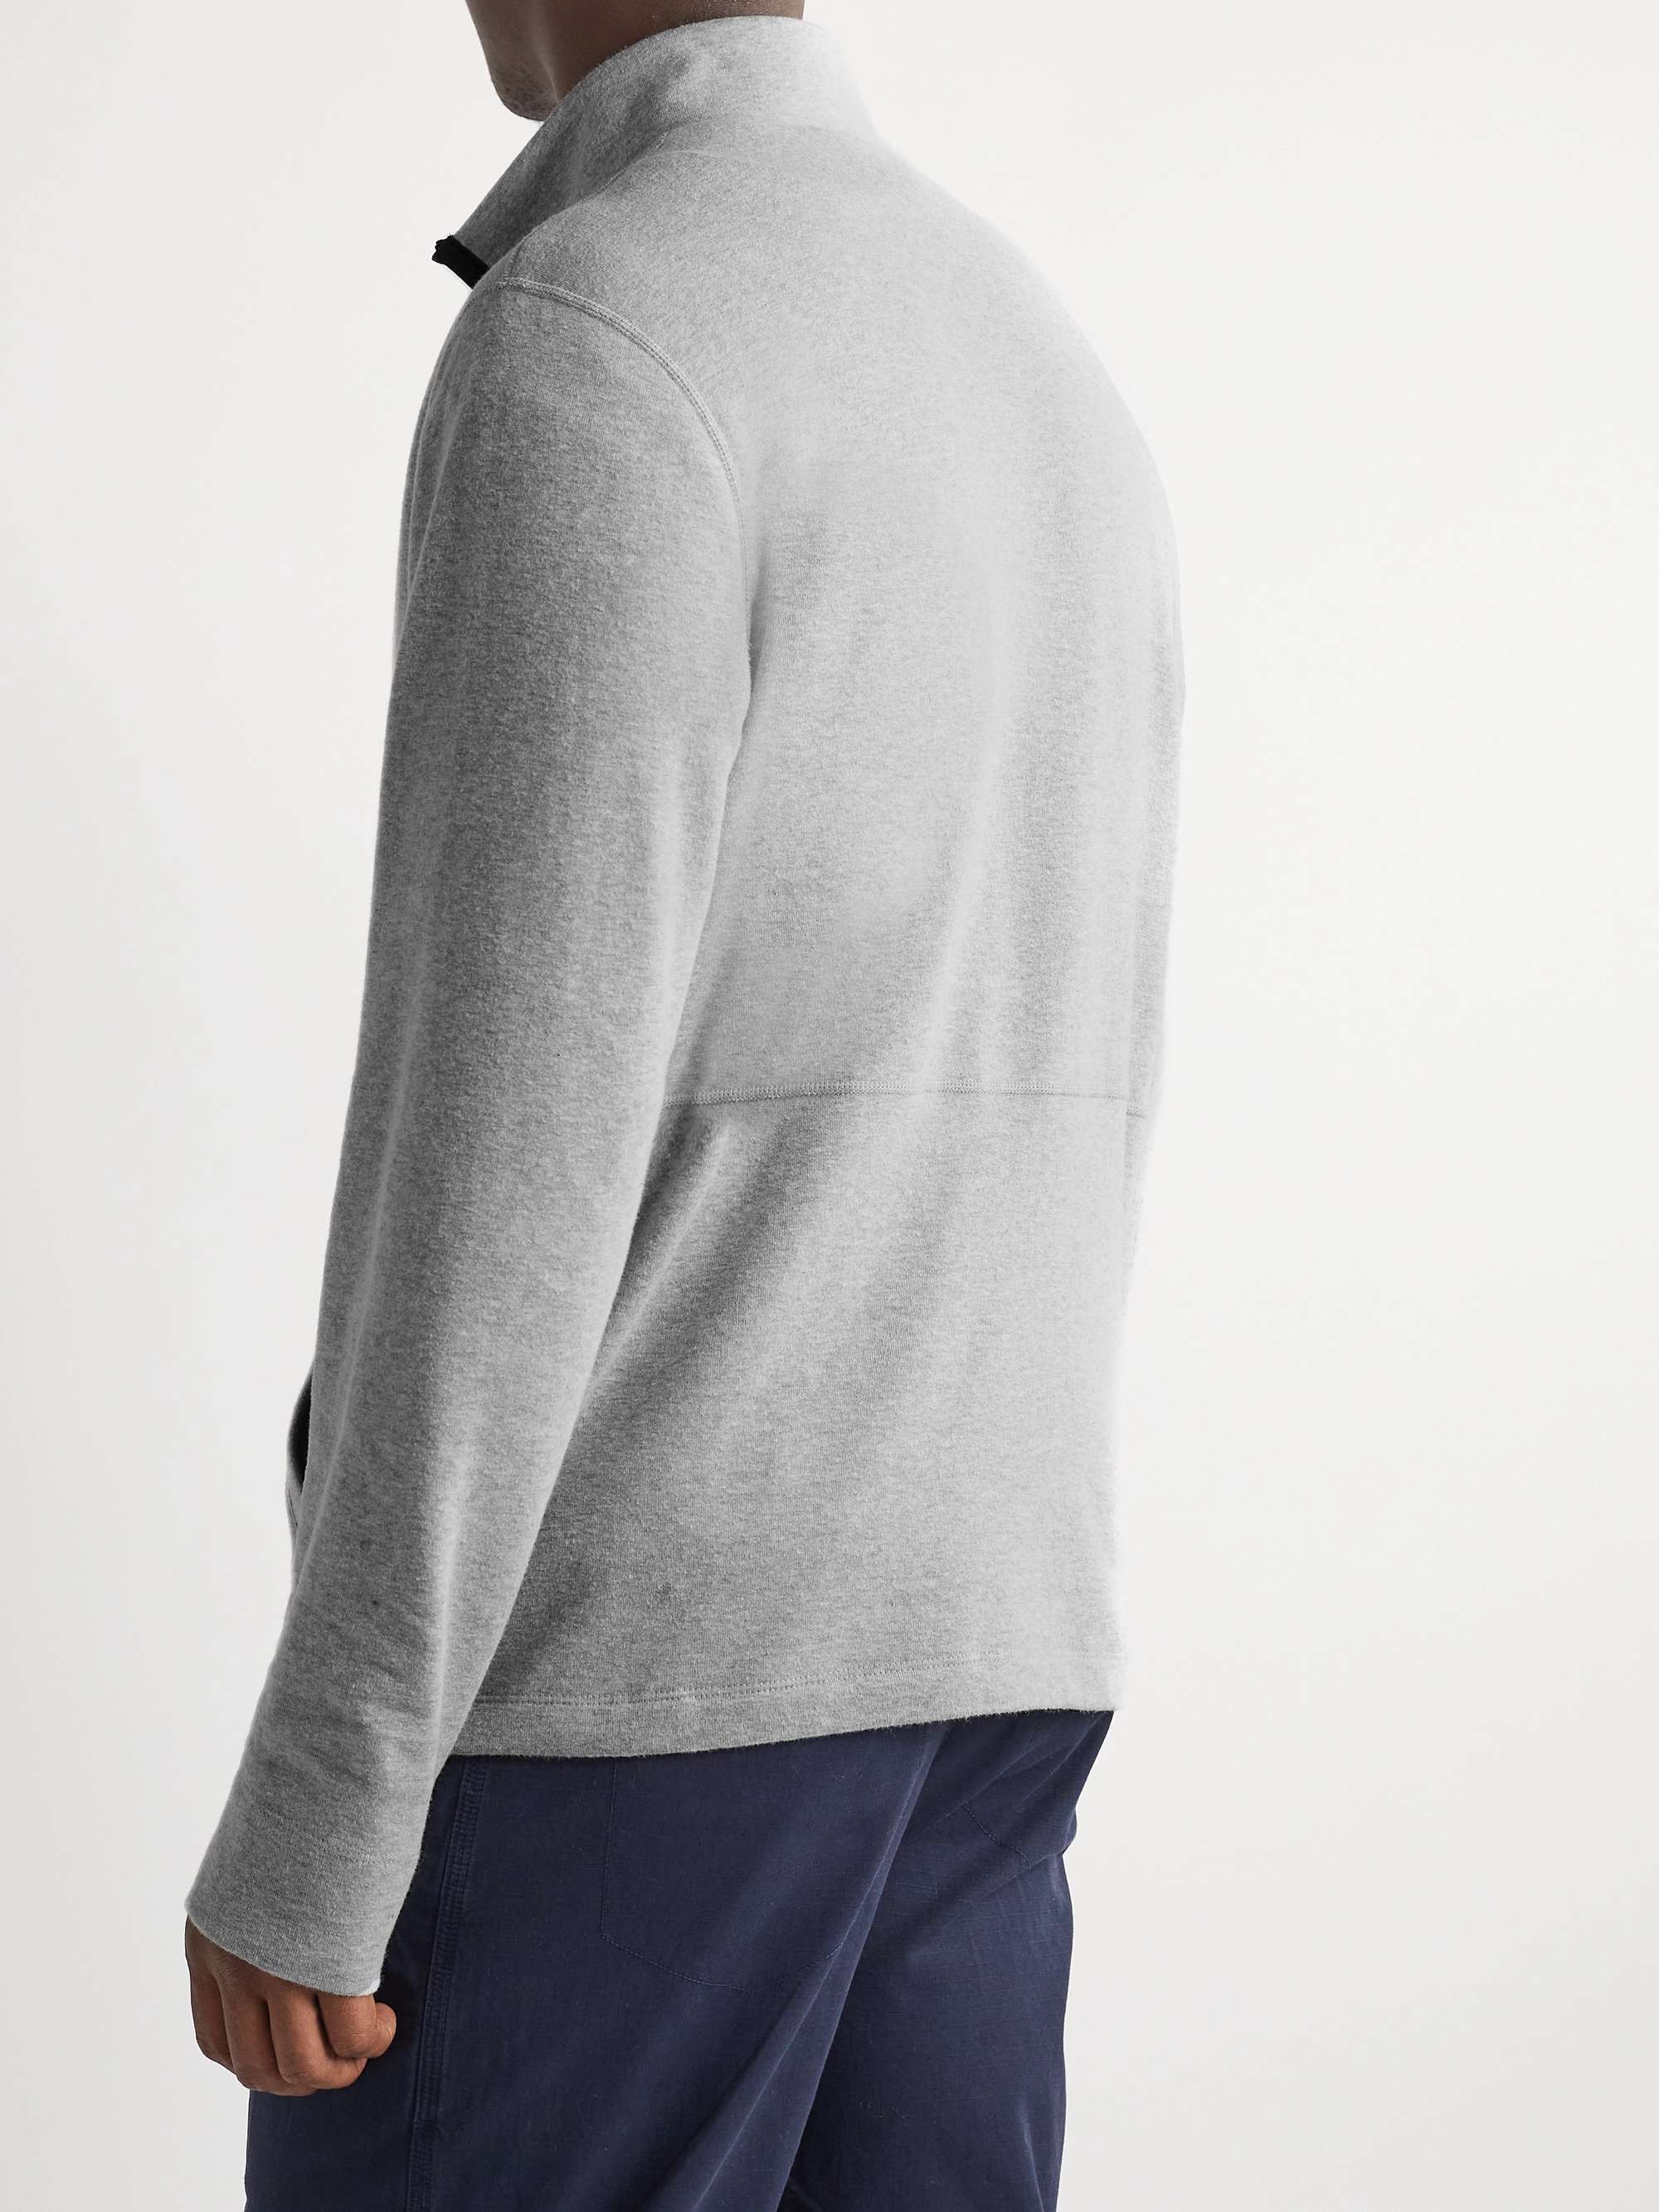 JAMES PERSE Cotton-Blend Jersey Half-Zip Sweatshirt